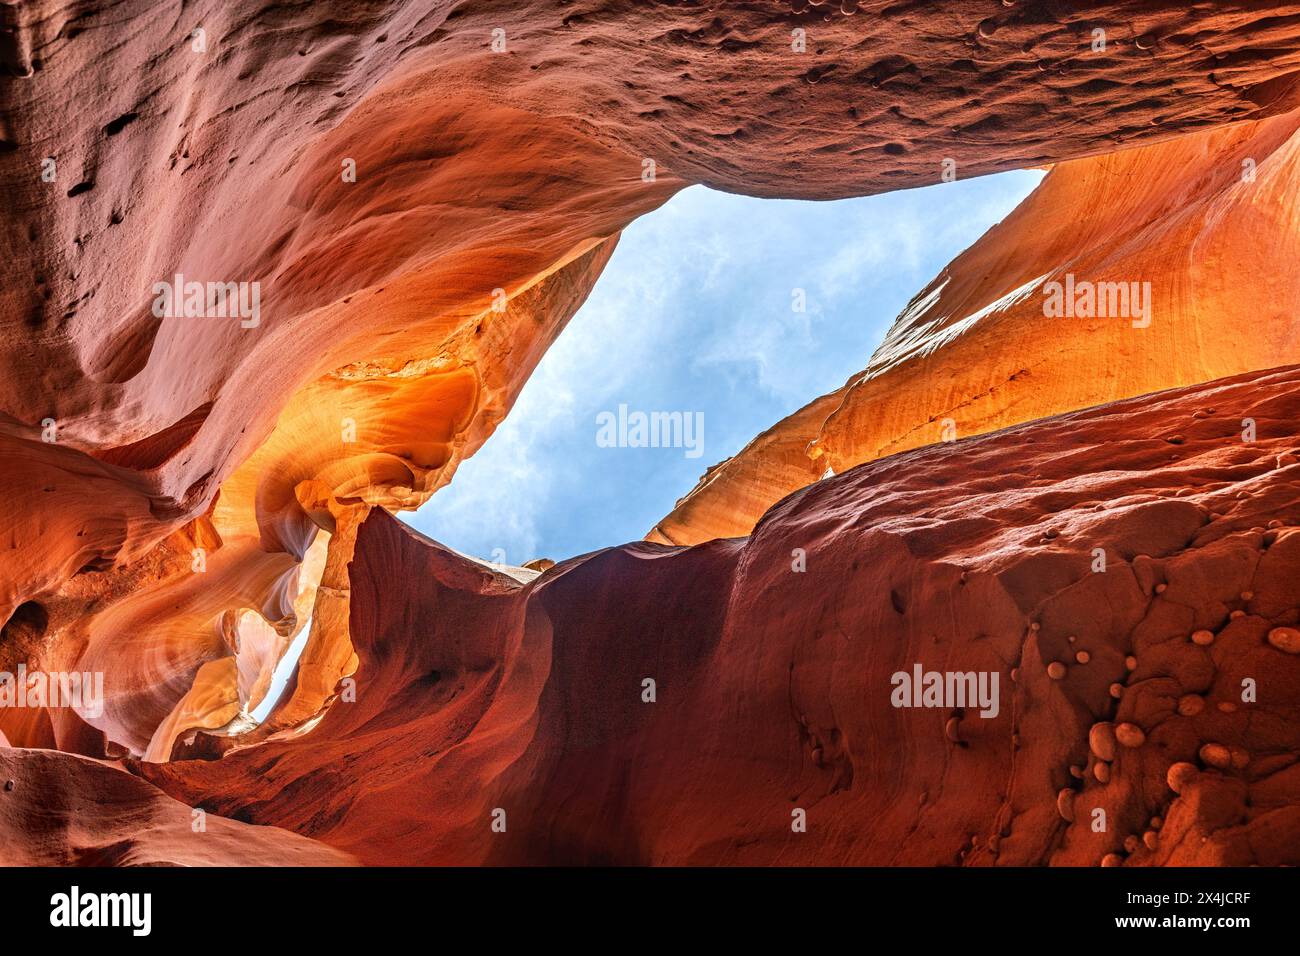 Il canyon Antelope slot vicino a Page, Arizona, mette in risalto lo stretto passaggio e l'incredibile luce brillante e gli intricati motivi che si formano nel corso degli anni Foto Stock